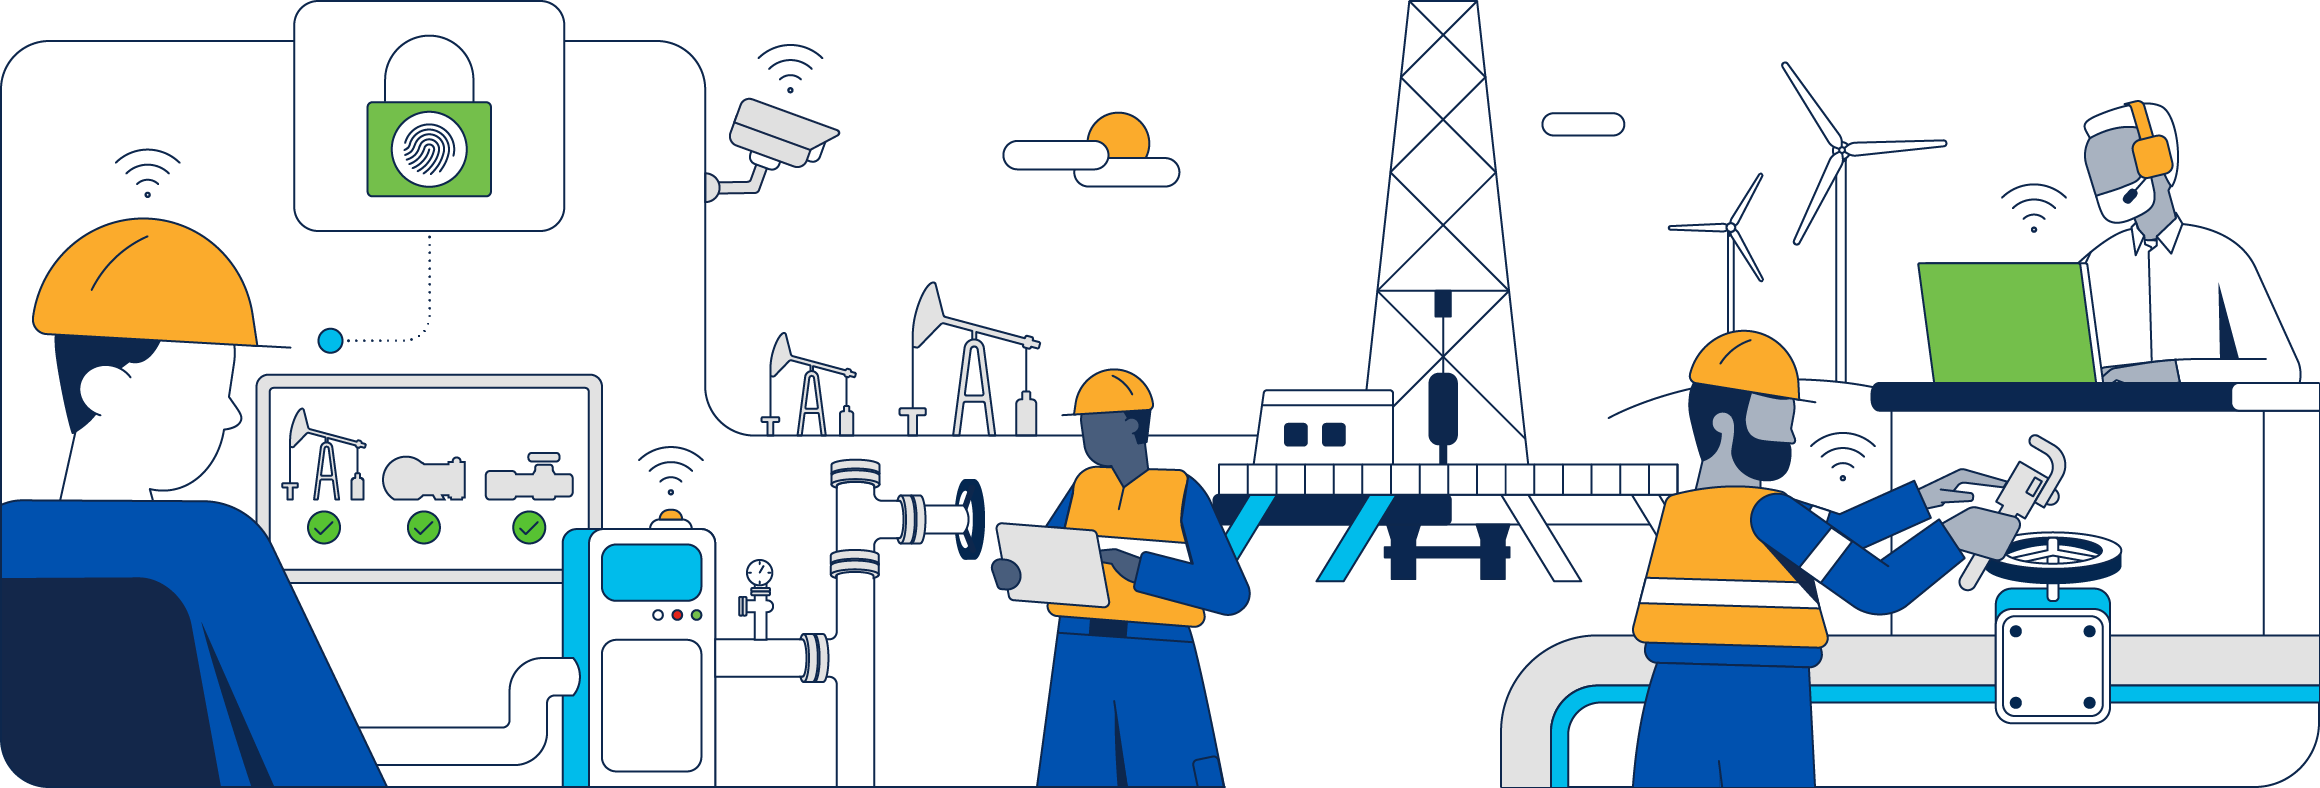 Industry illustration